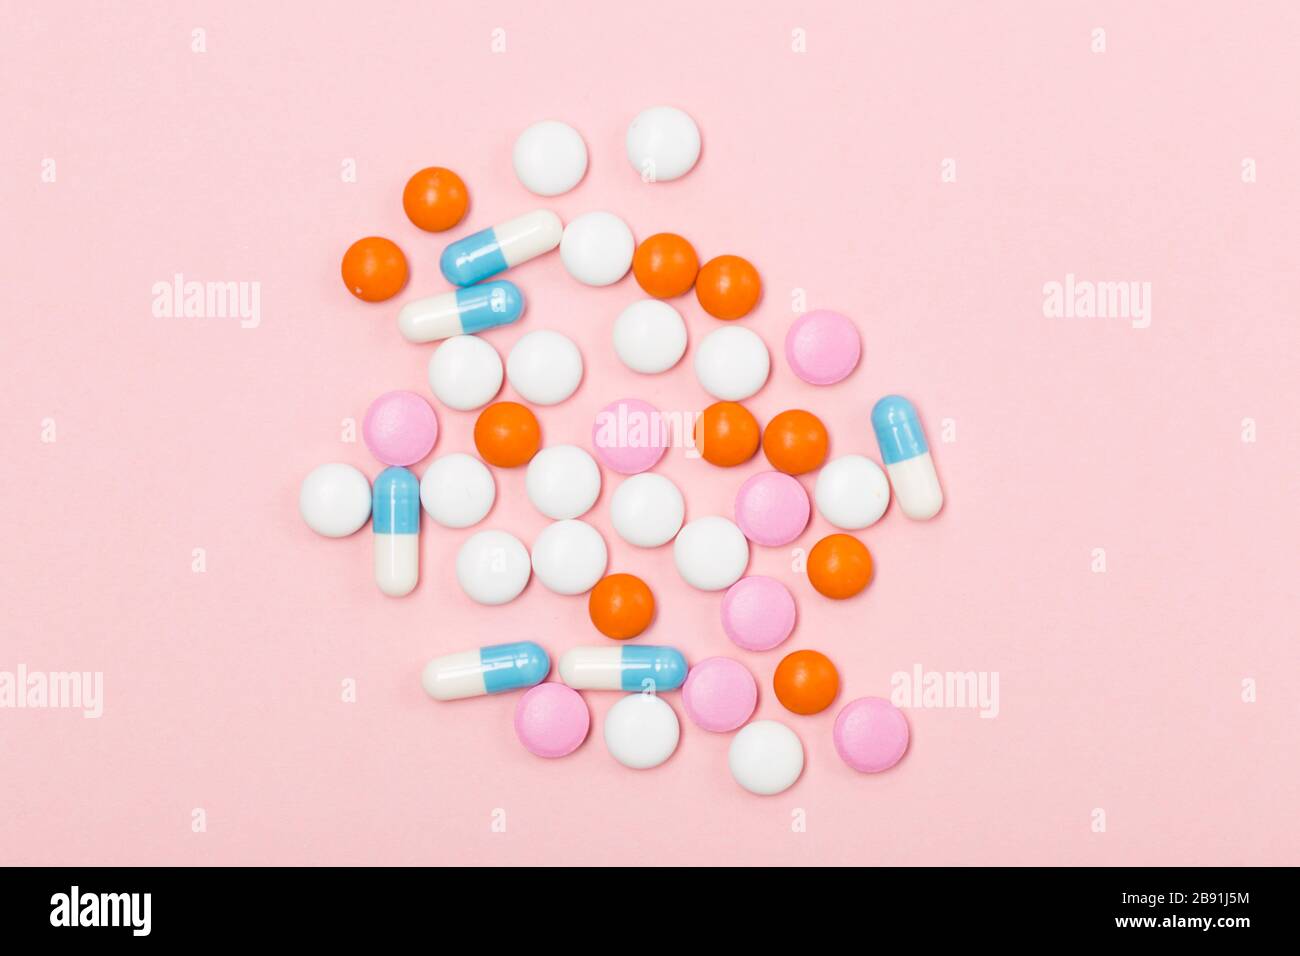 Assortiment de pilules, comprimés et capsules de médecine pharmaceutique sur fond rose. Espace libre. Gros plan sur le concept de santé Banque D'Images